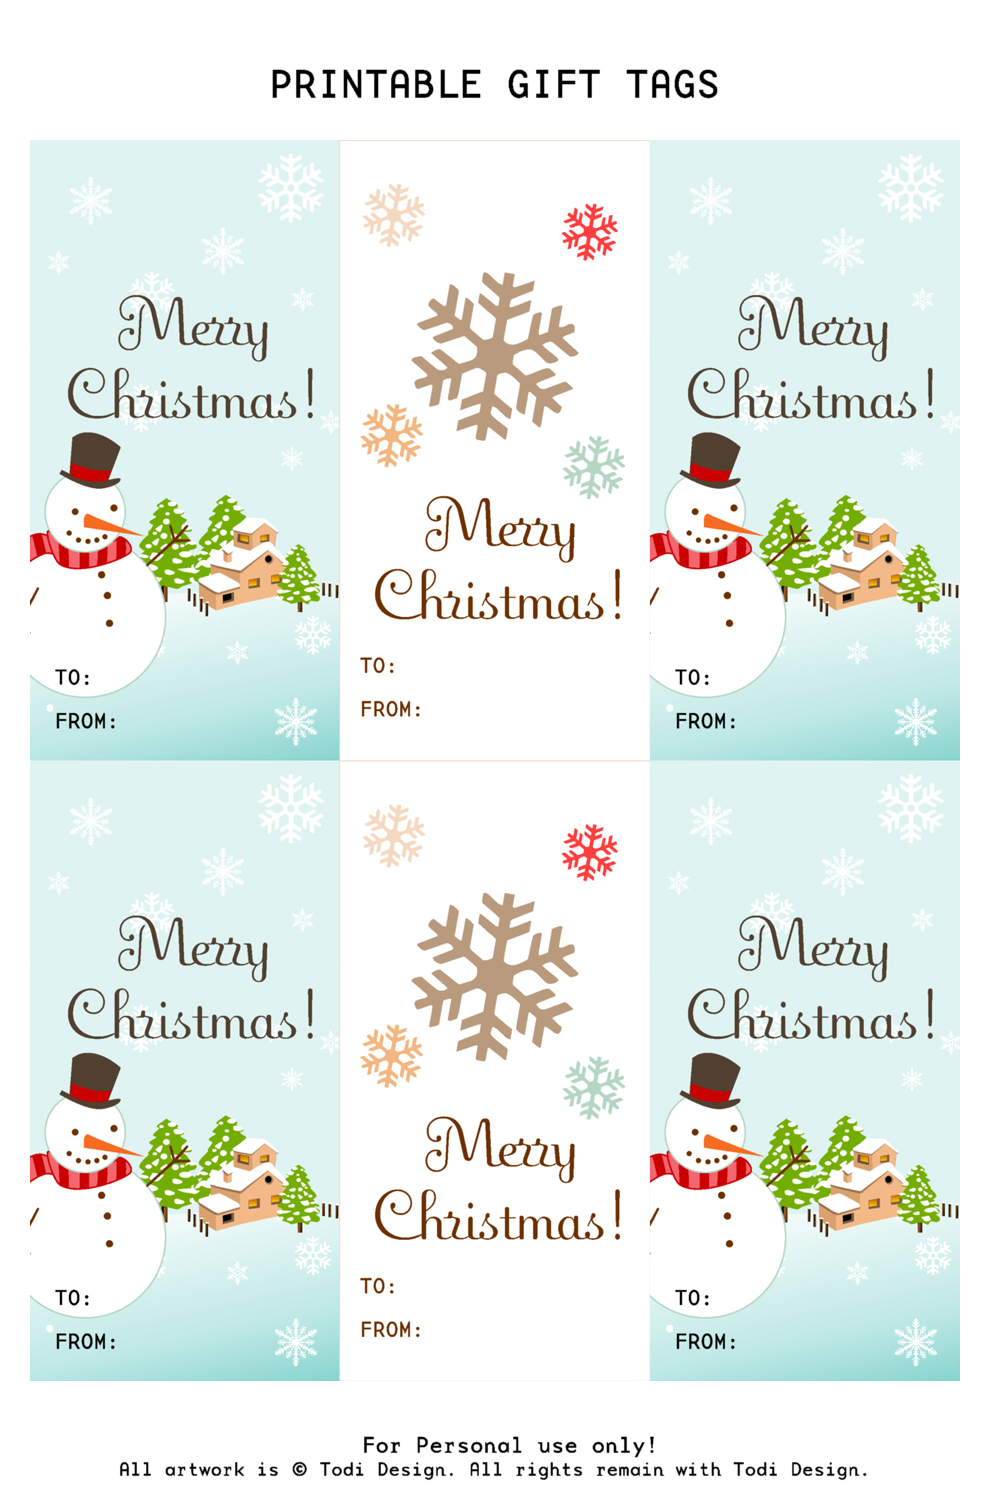 todi-spirit-of-christmas-free-printable-gift-tags-for-holiday-gifts